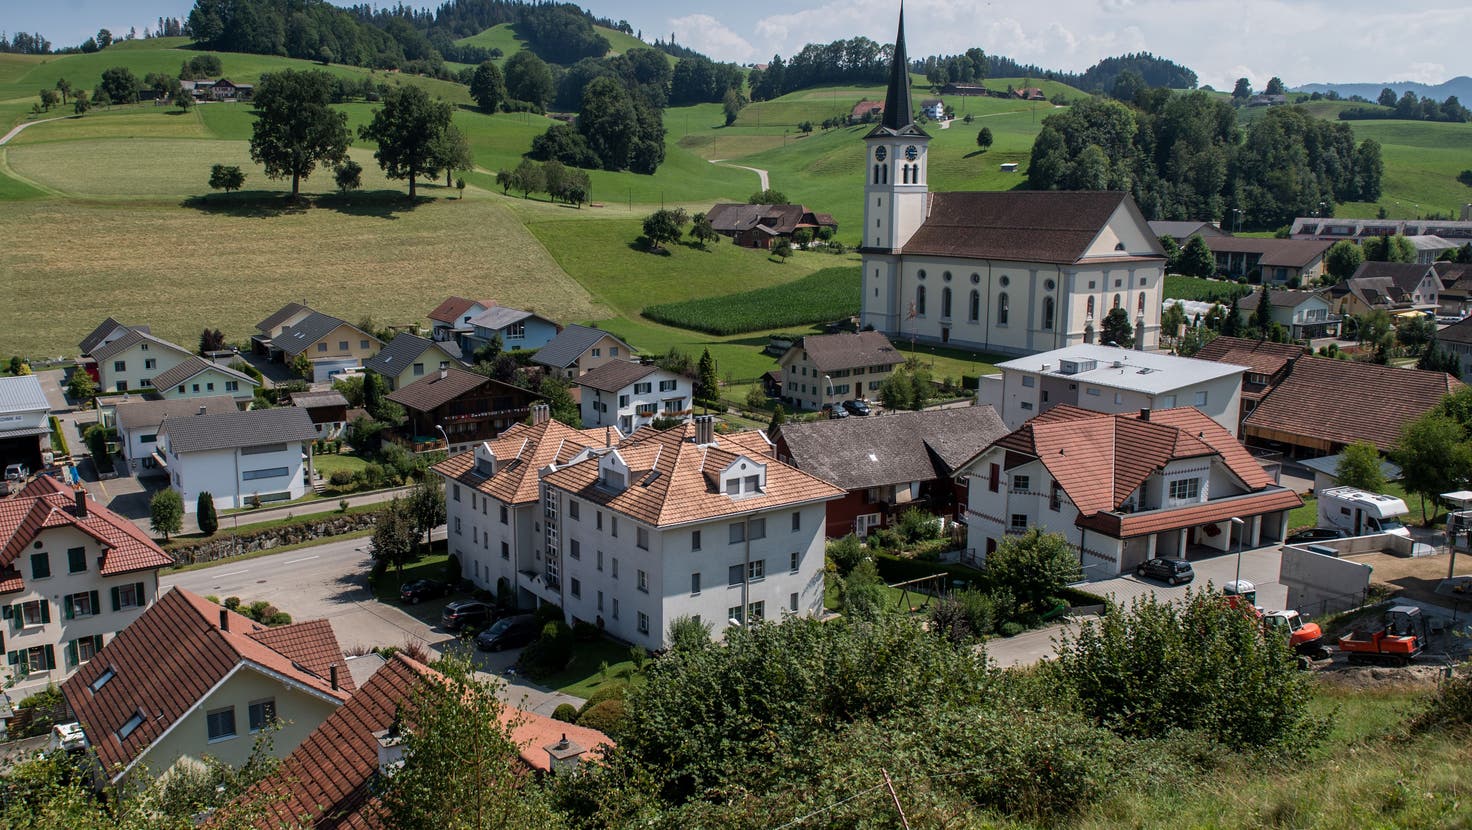 Hergiswil bei Willisau gehört zum Pastoralraum Region Willisau. Im Bild zu sehen, ist die Kirche von Hergiswil. (Bild: Boris Bürgisser (Hergiswil bei Willisau, 28. 7. 2020))